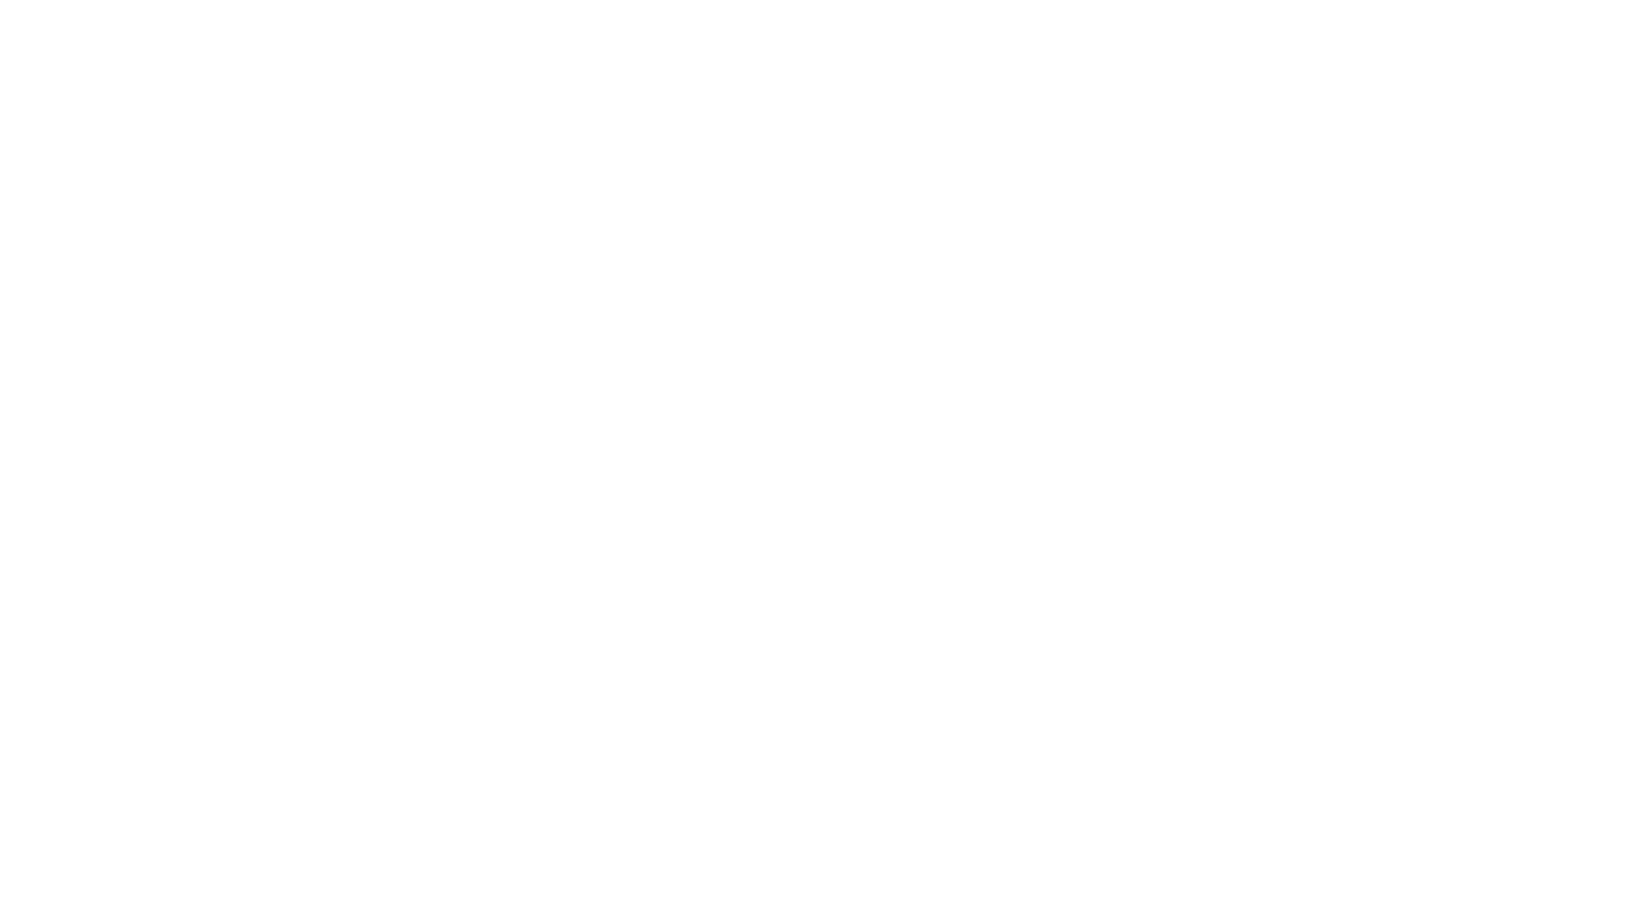 Кейс сервиса BRANDNATION - Дизайн упаковки и брендинг кофе. Брендинговое агентство BRANDNATION в Москве и Санкт-Петербурге. Услуги: разработка логотипа и фирменного стиля, дизайн упаковки, брендбук, ребрендинг, разработка сайта.